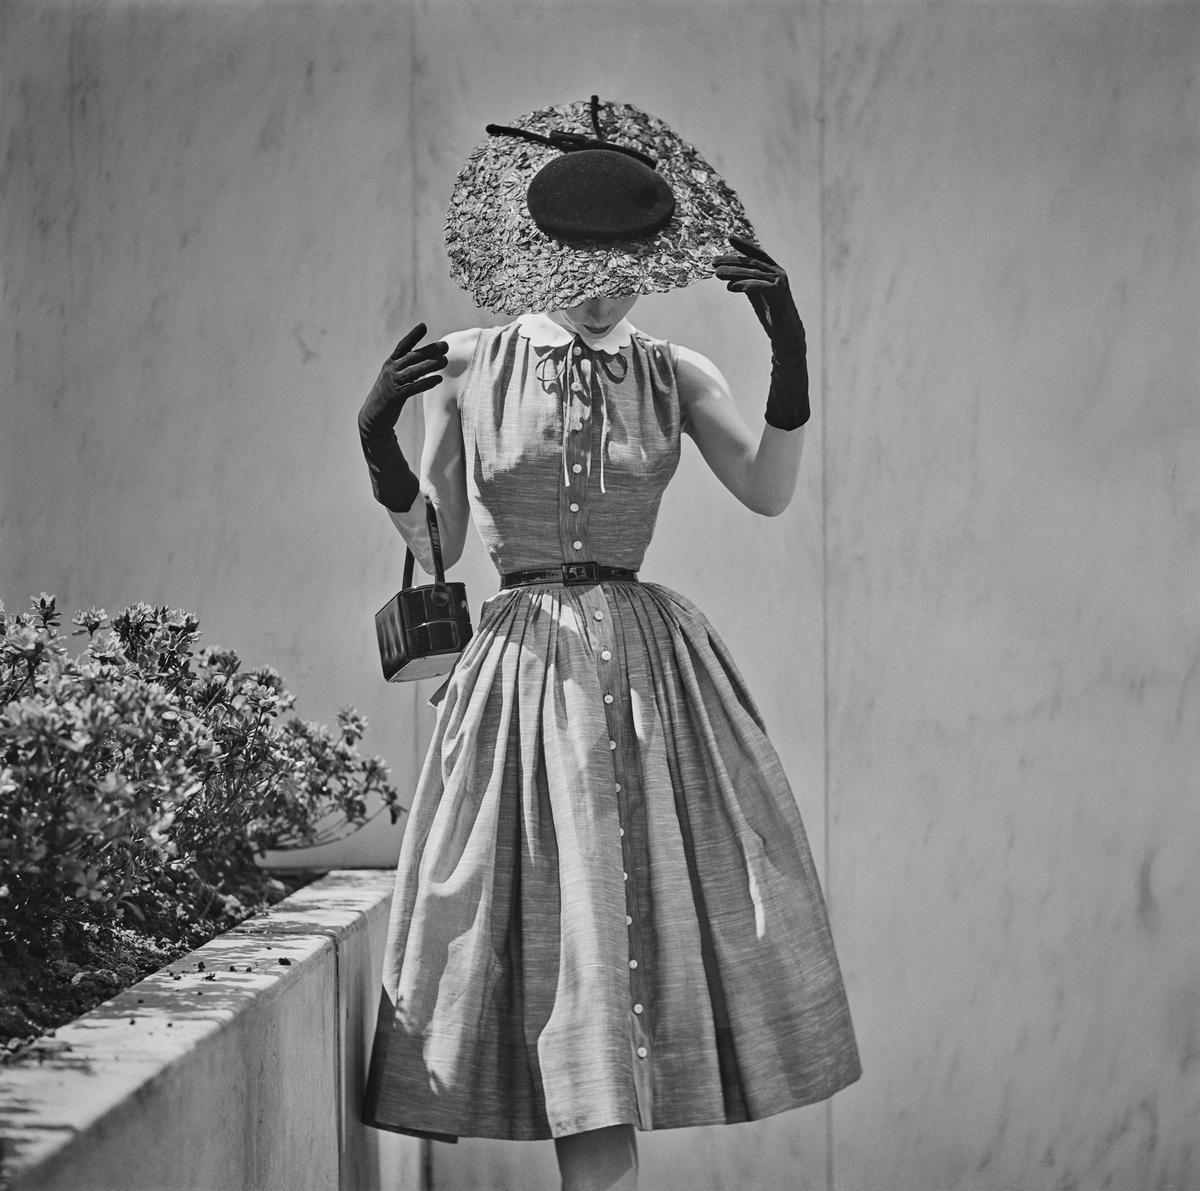 Eine junge Frau modelliert ein Outfit für einen Saks Fifth Avenue-Katalog, ca. 1955. 
Foto von Slim Aarons 

Schlanker Aarons-Silbergelatine-Druck auf Faserbasis 
Später gedruckt 
Slim Aarons Estate Edition 
Hergestellt unter Verwendung des einzigen